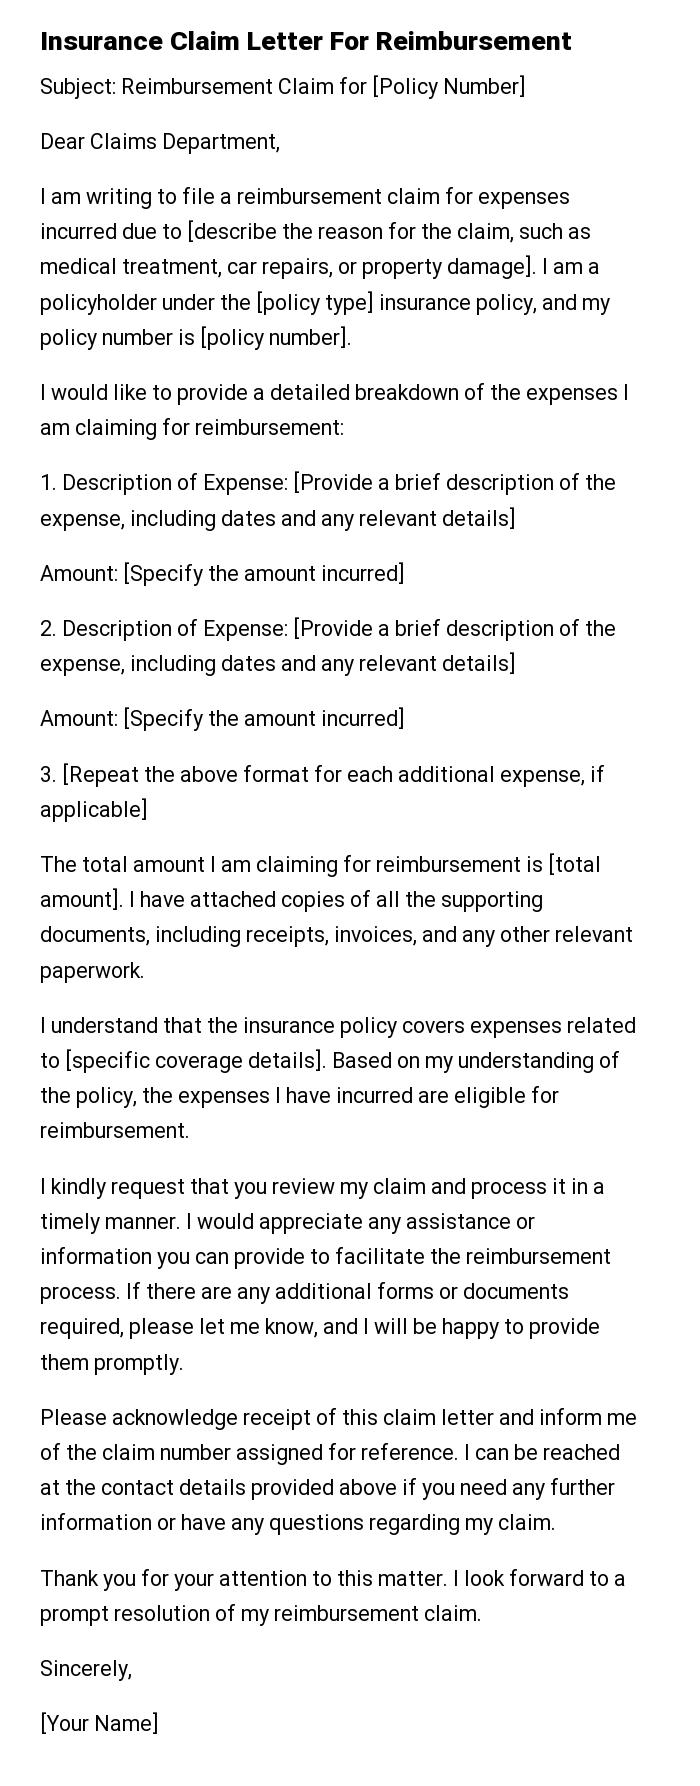 Insurance Claim Letter For Reimbursement